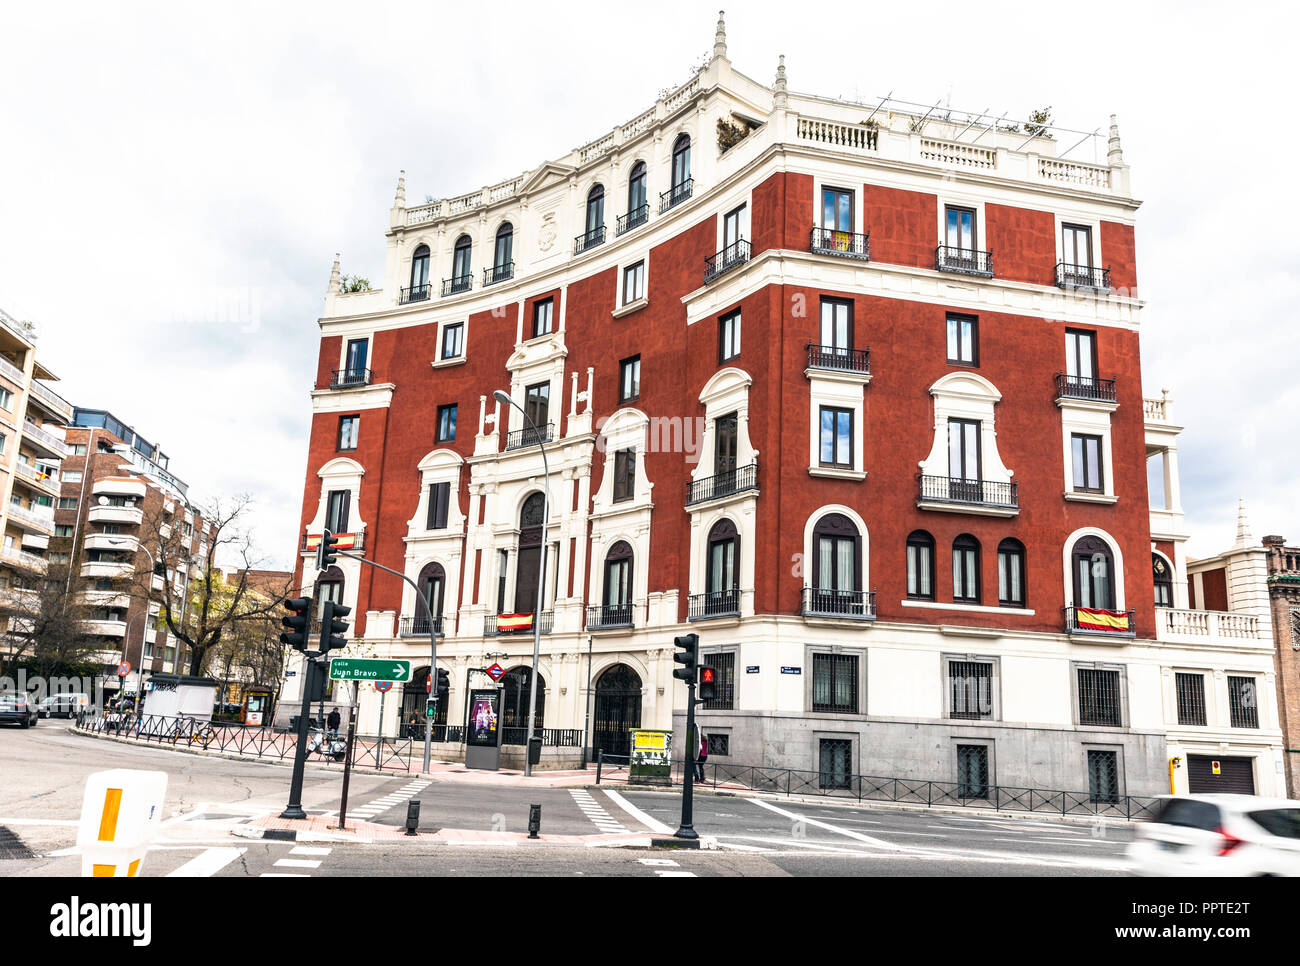 Estudios y Proyectos Culturales building, Glorieta Rubén Darío, Madrid, Spain. Stock Photo